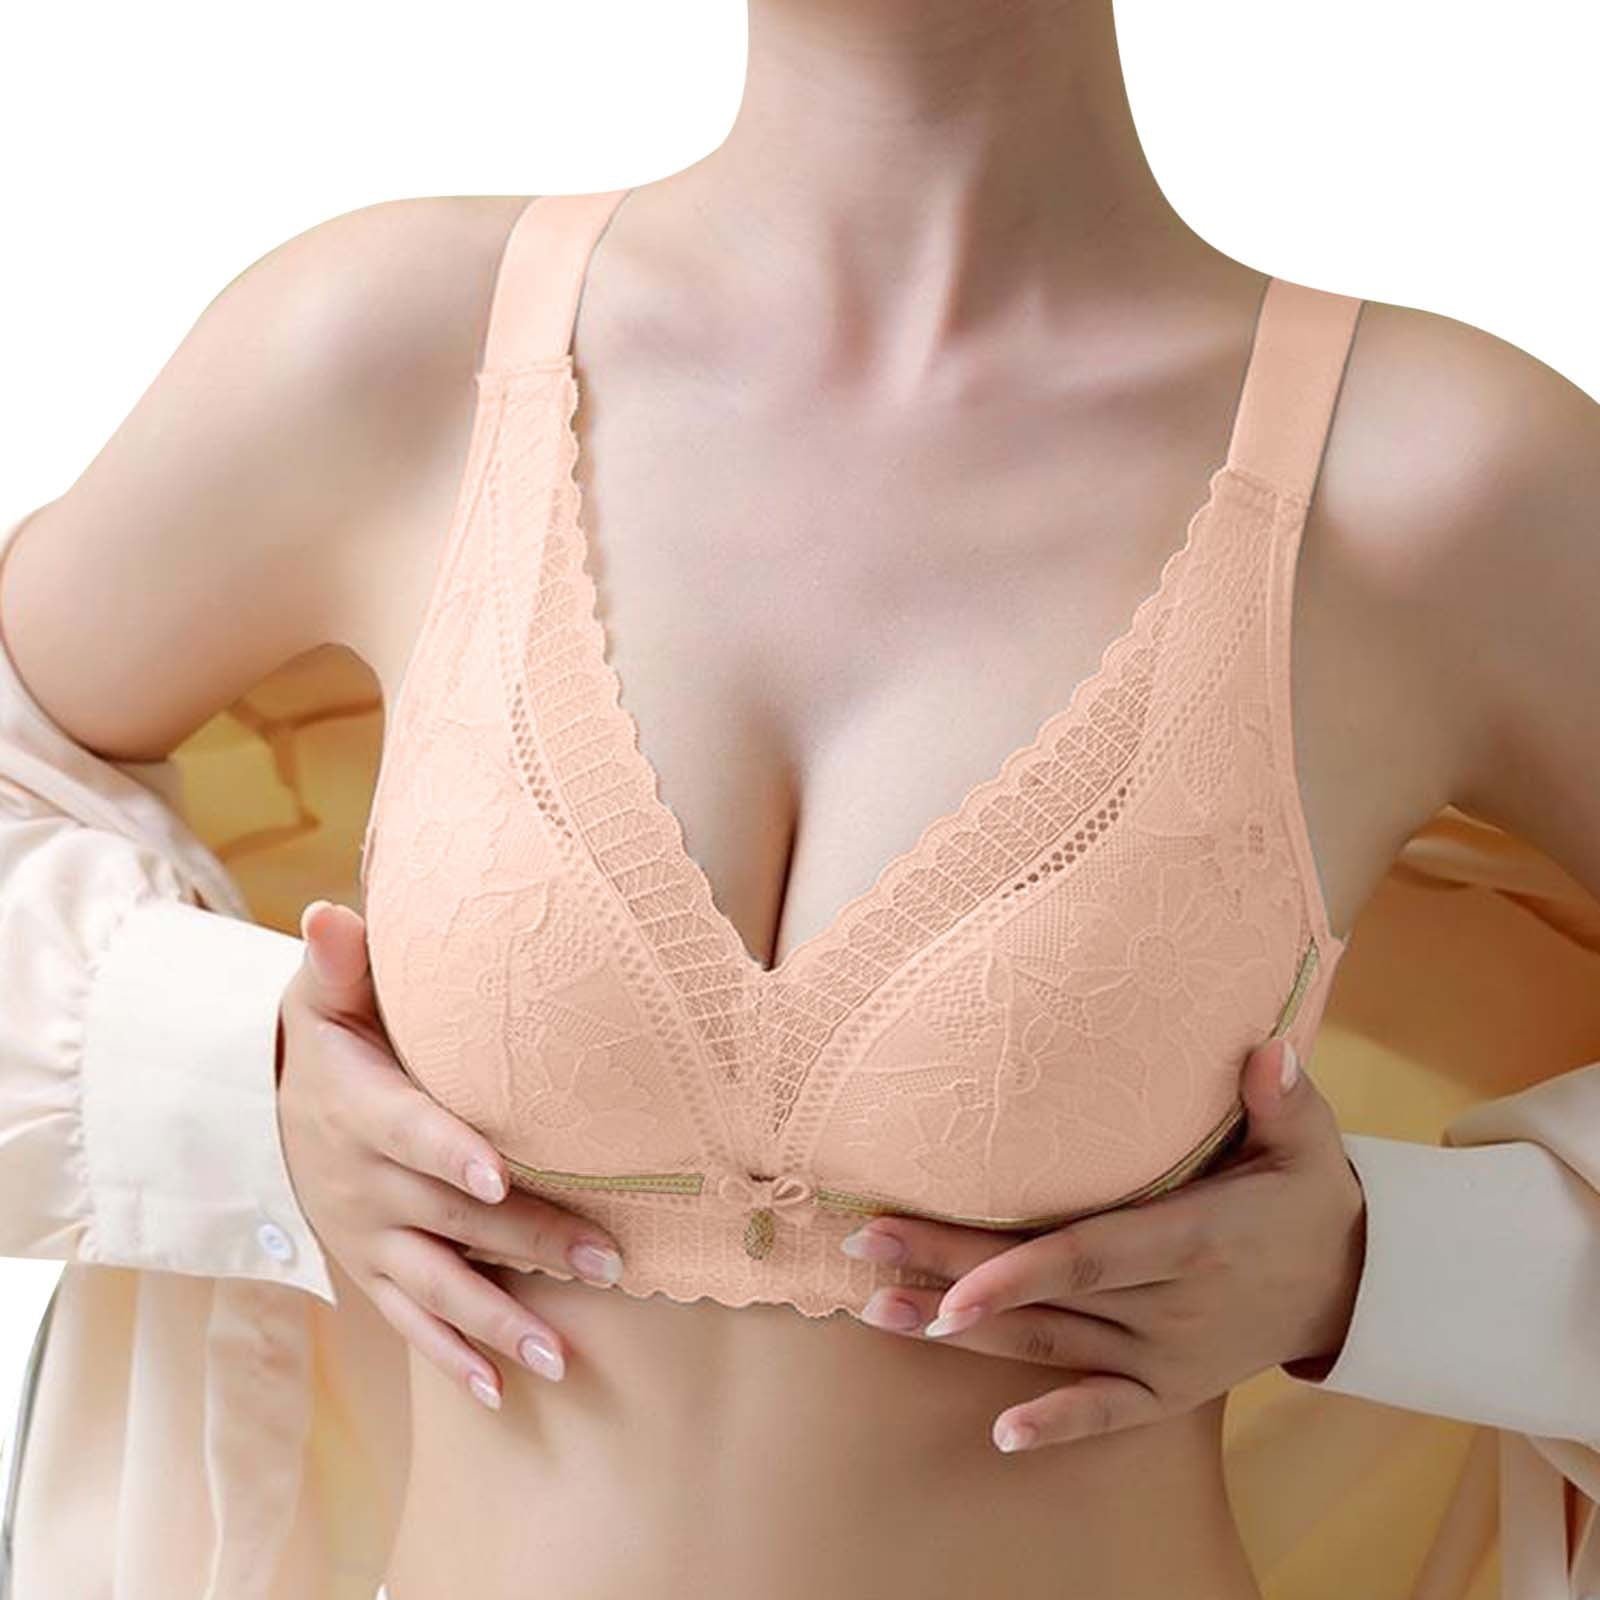 zuwimk Bras For Women Full Coverage,Women's Plus Size Stark Beauty  Underwire Bra Pink,42/95D 